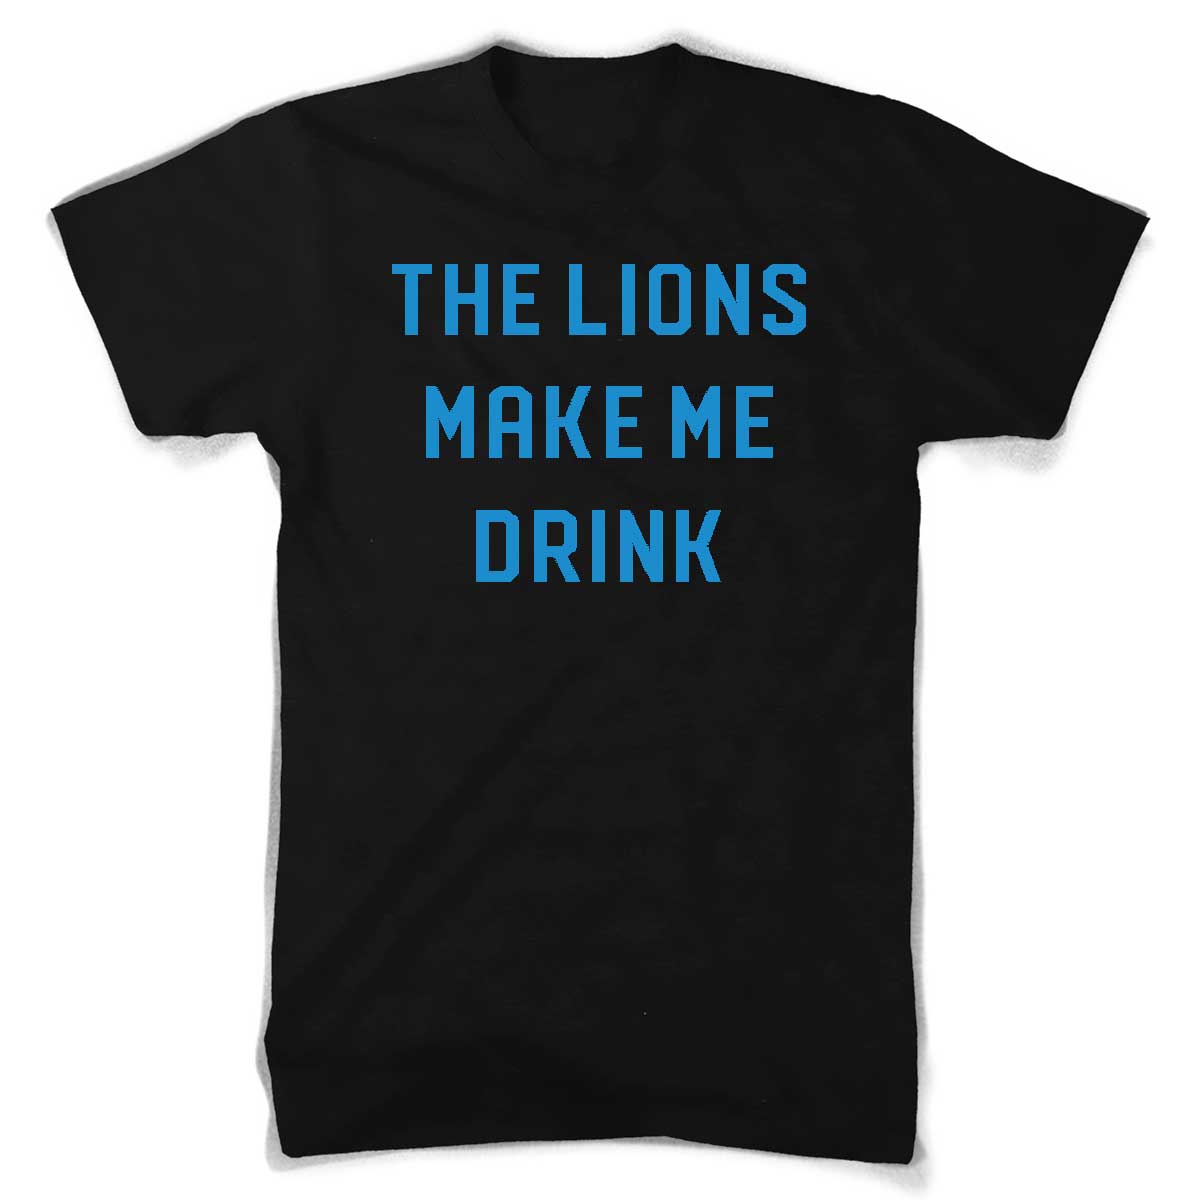 Detroit Lions Merchandise